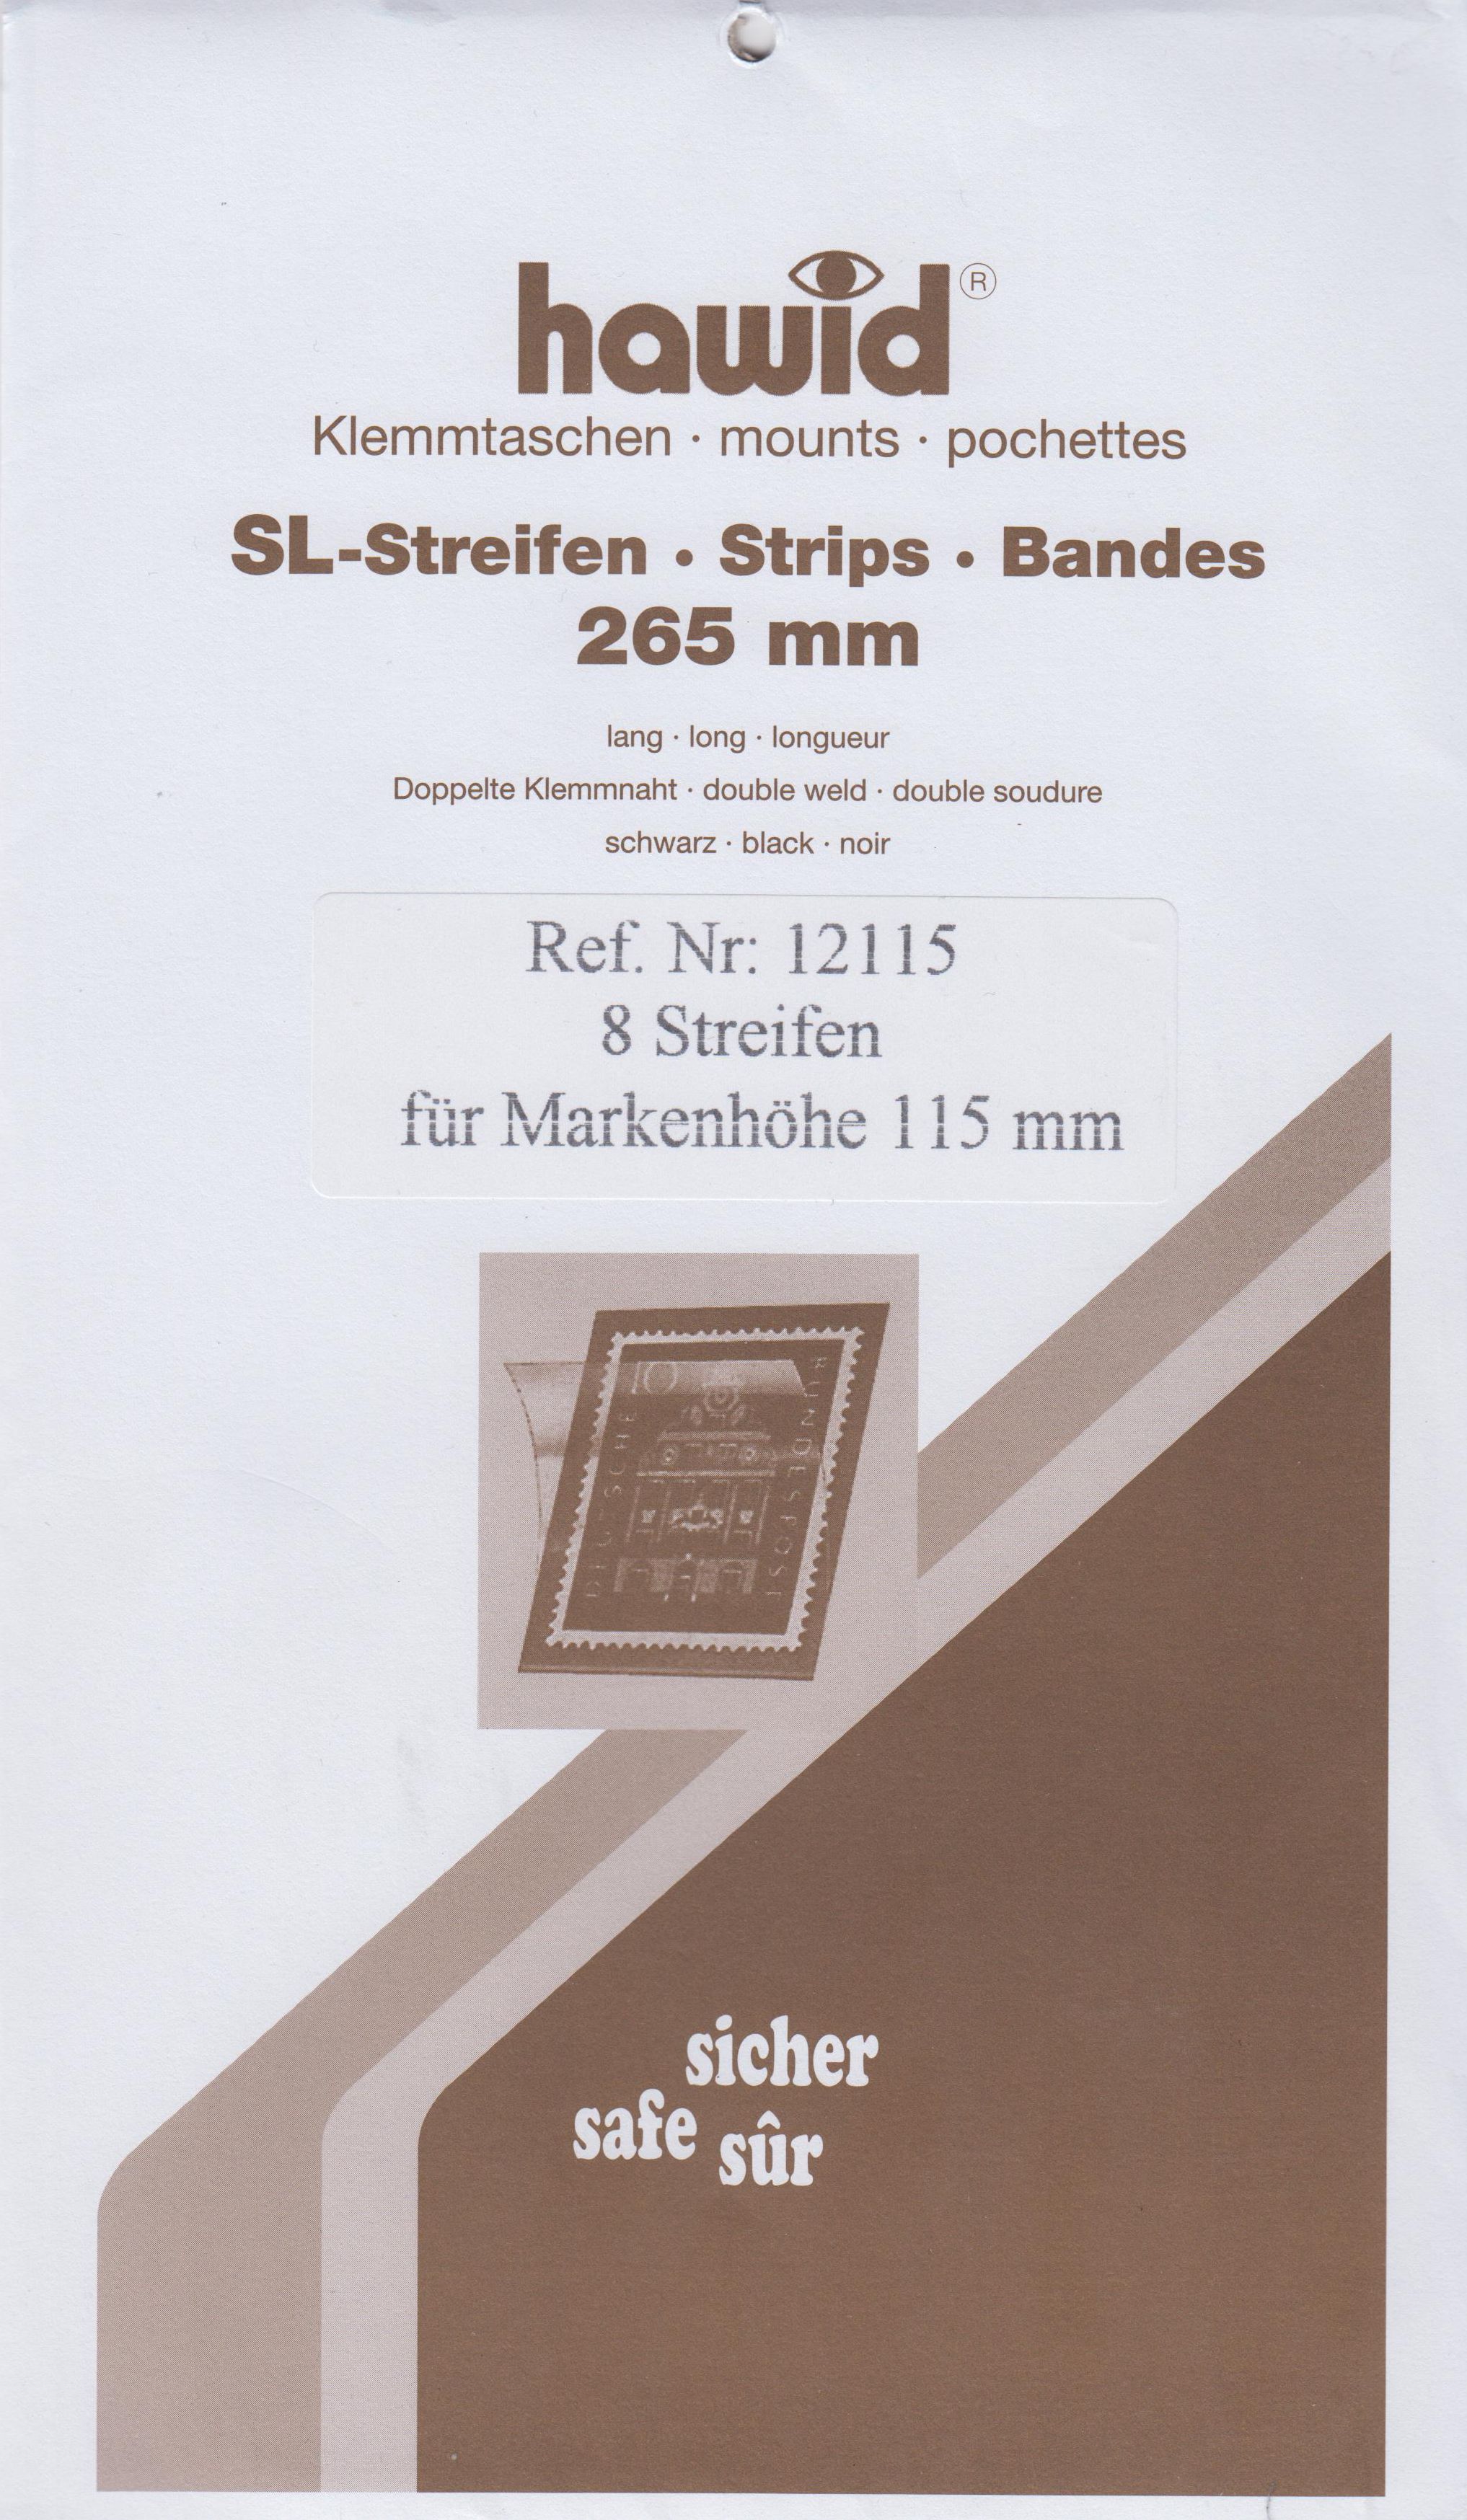 Hawid SL-Streifen Nr. 12115, 8 Streifen für Markenhöhe 115 mm, schwarz